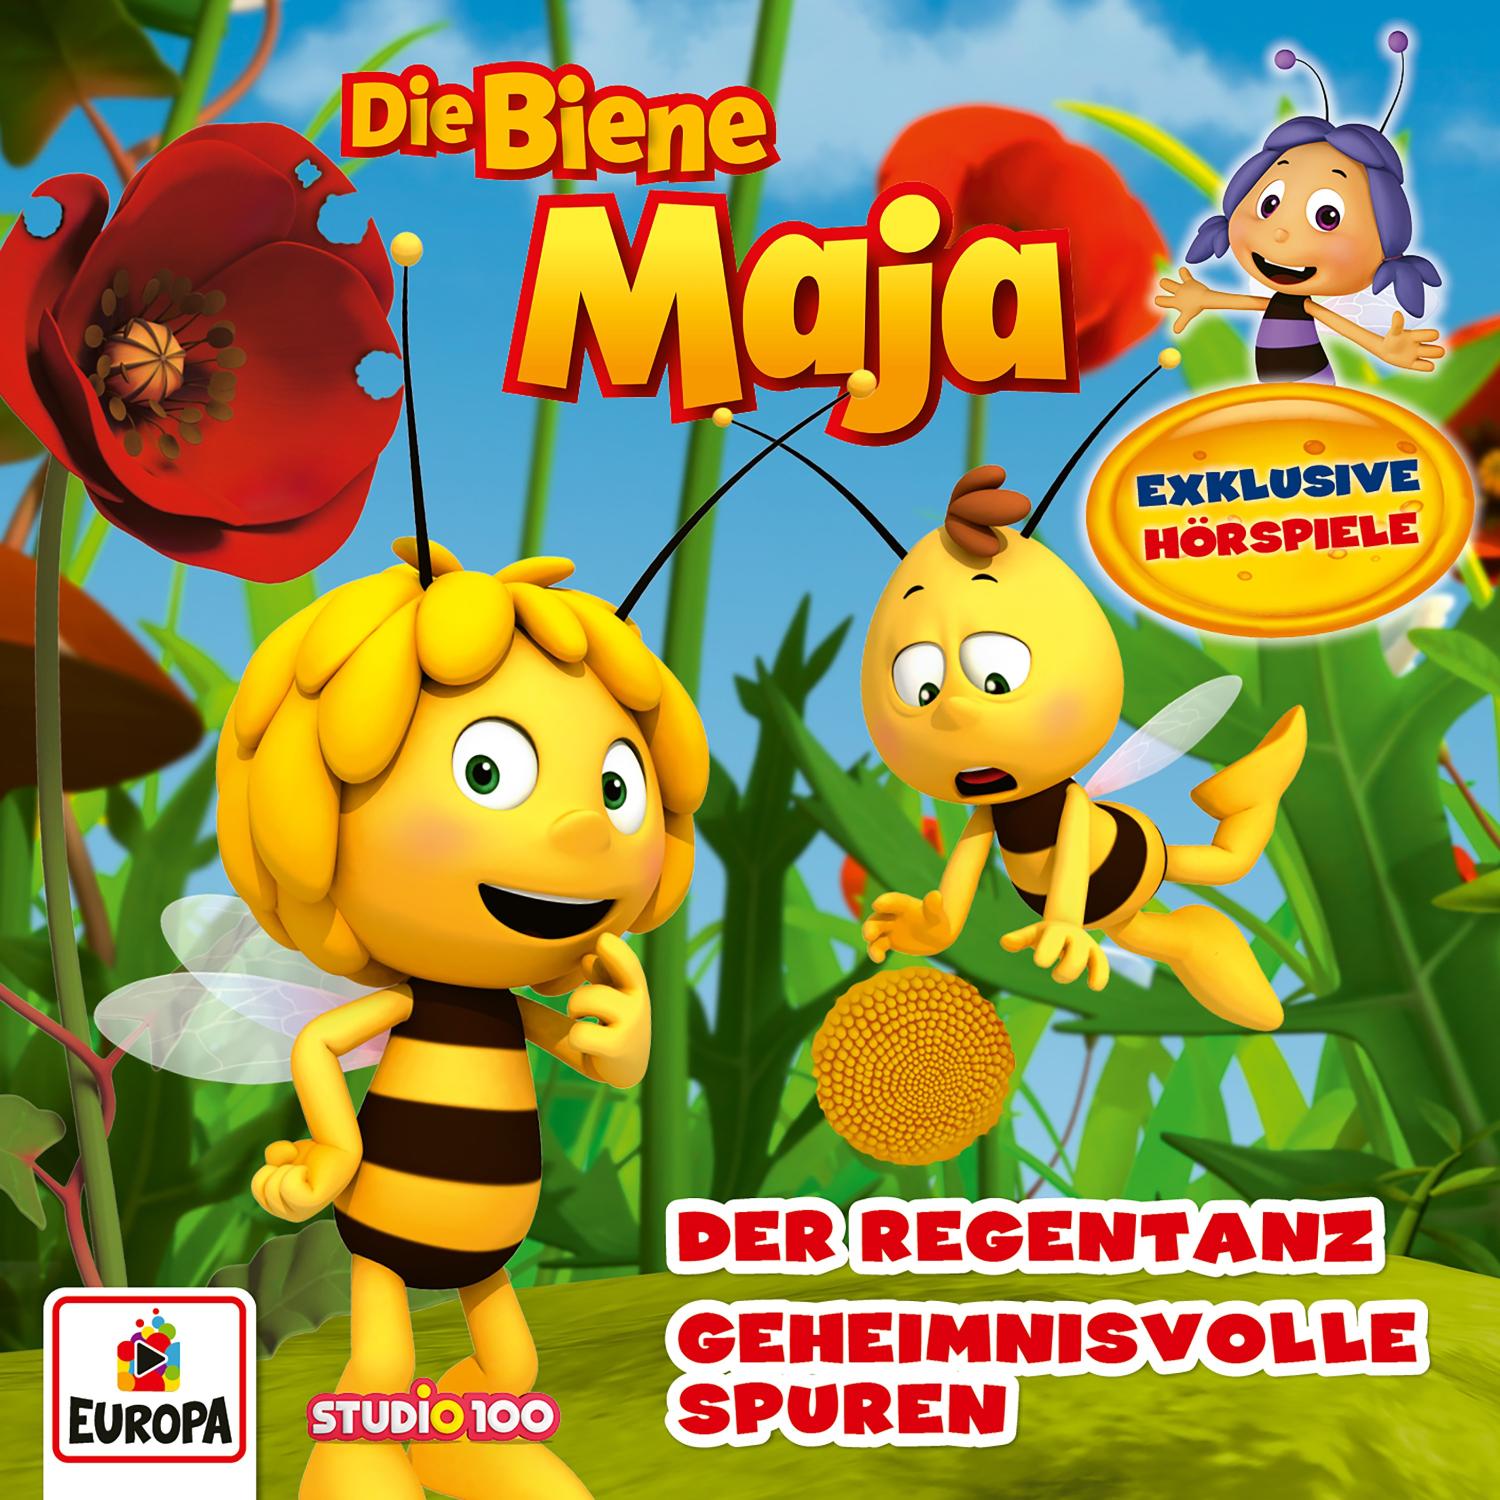 Die Biene Maja CGI: Der Regentanz/Geheimnisvolle Spuren 